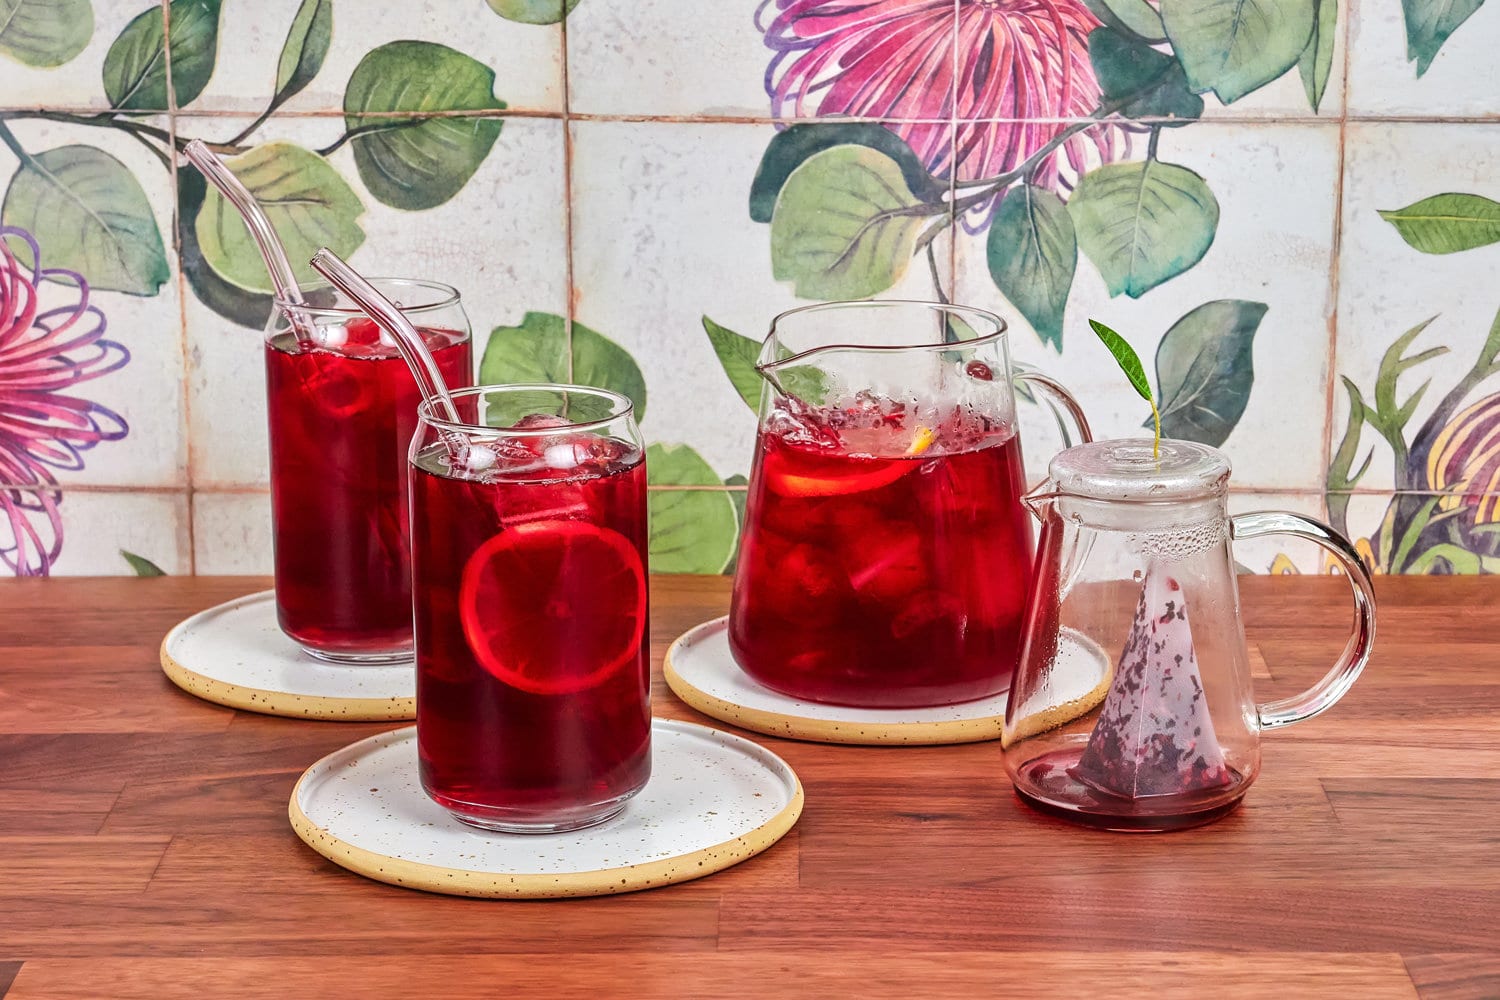 树莓冰茶在一个特殊的玻璃茶壶,两杯冰茶和硼硅酸盐吸管,在胡桃木桌子和瓷砖的背景。